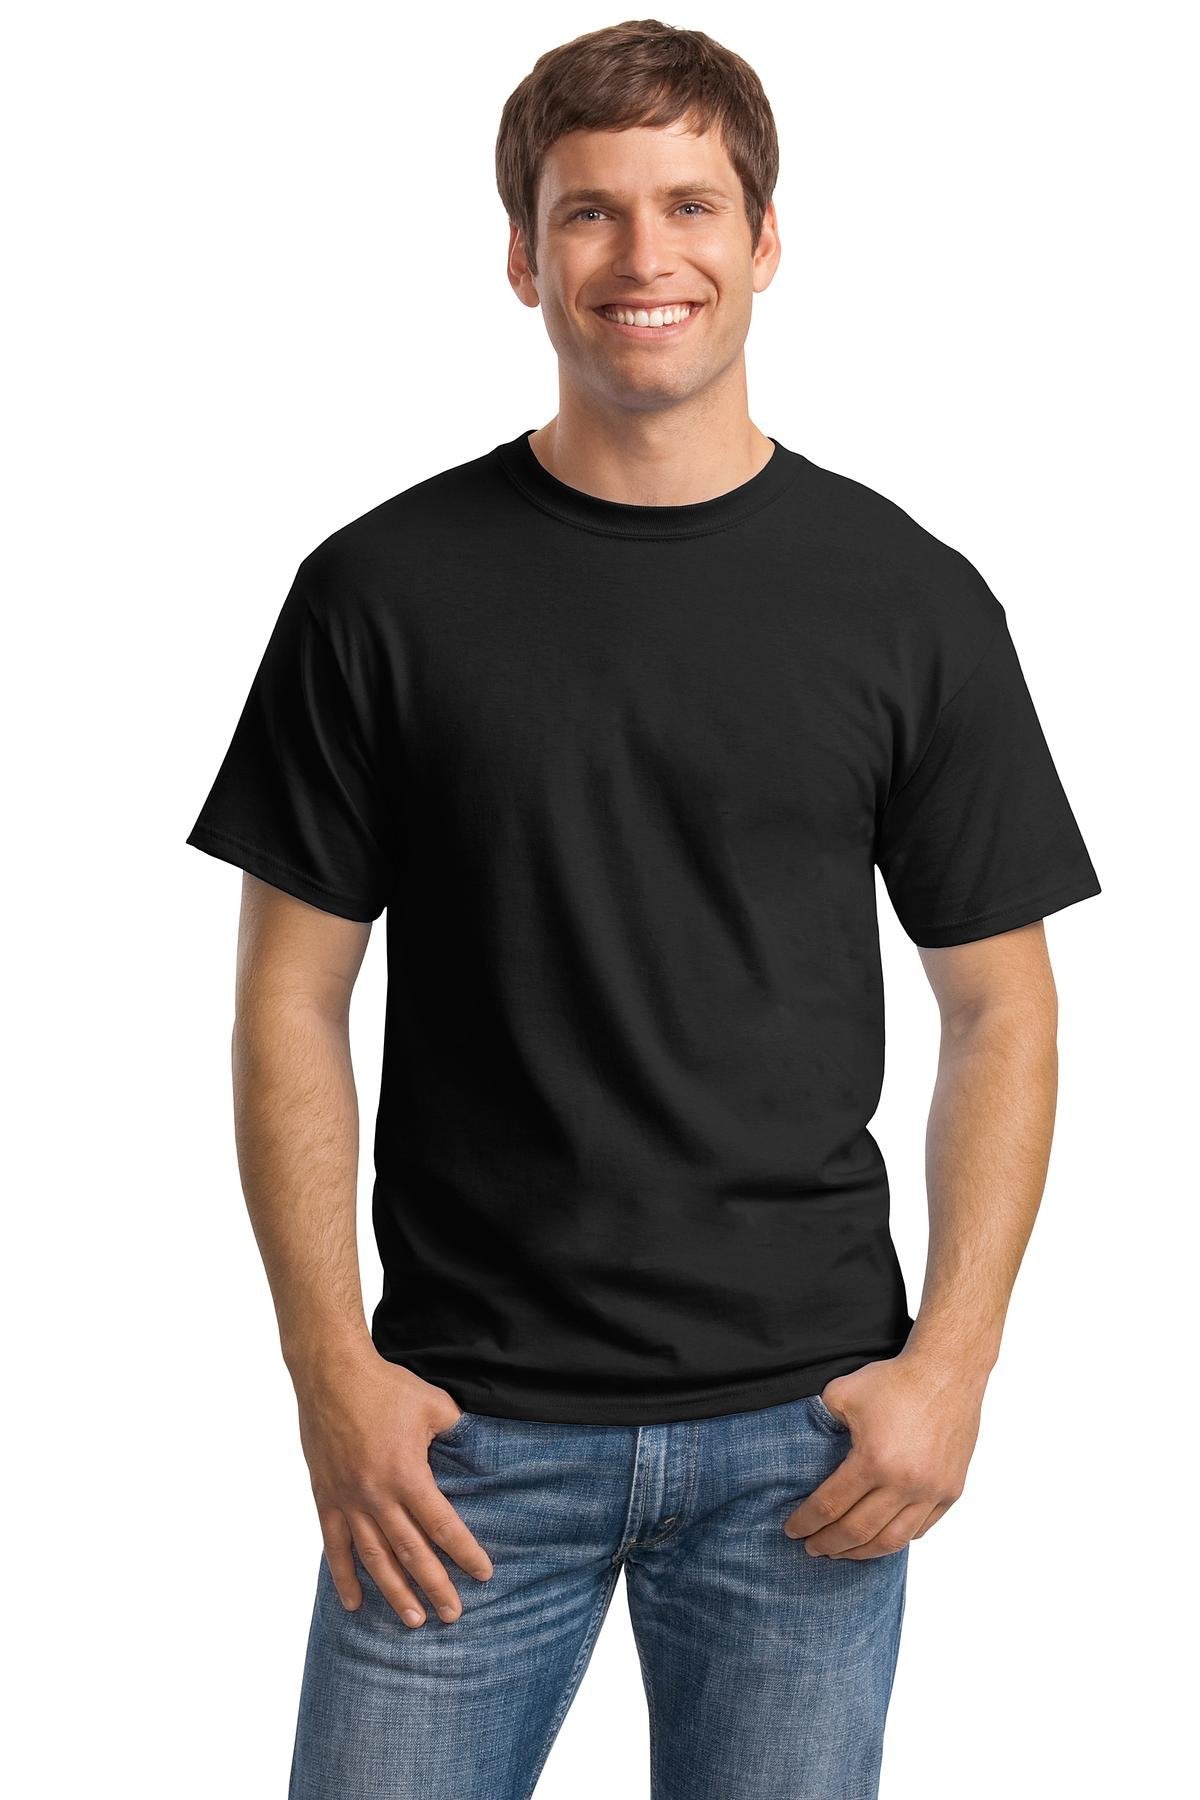 Hanes Men's Tagless ComfortSoft Crewneck T-Shirt 5P_Black_M